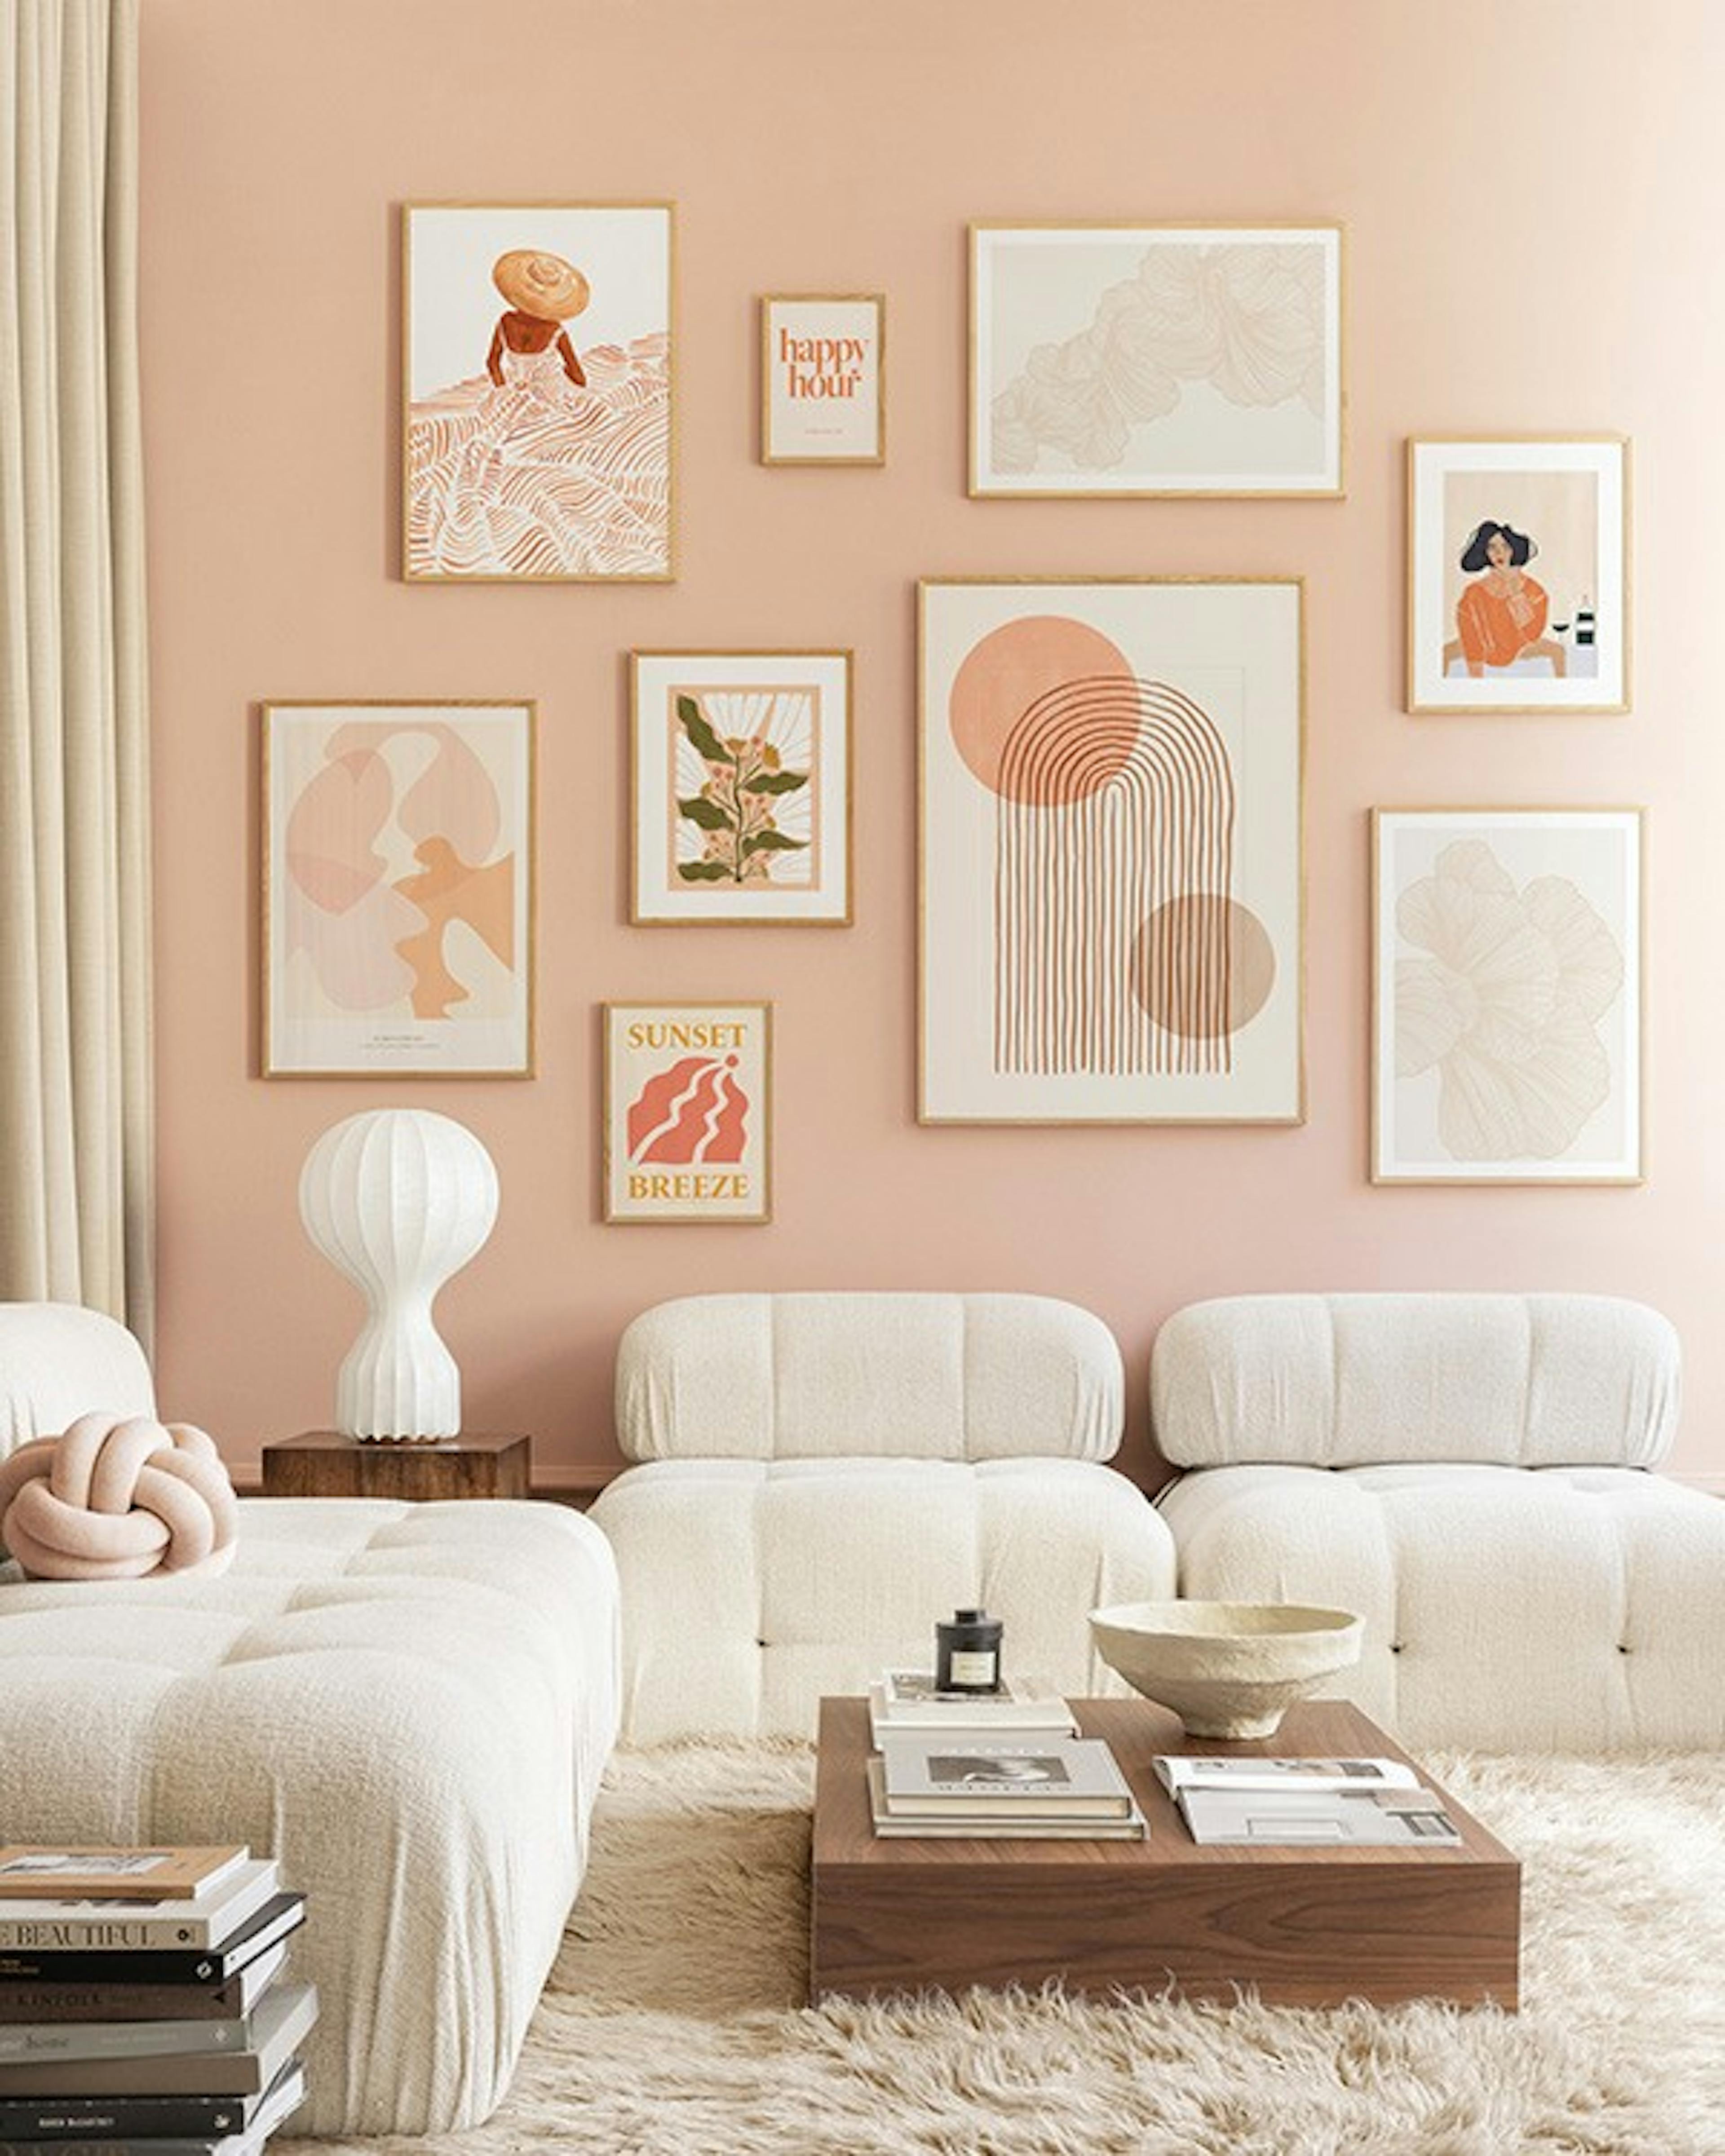 Peachy livingroom galleria a parete